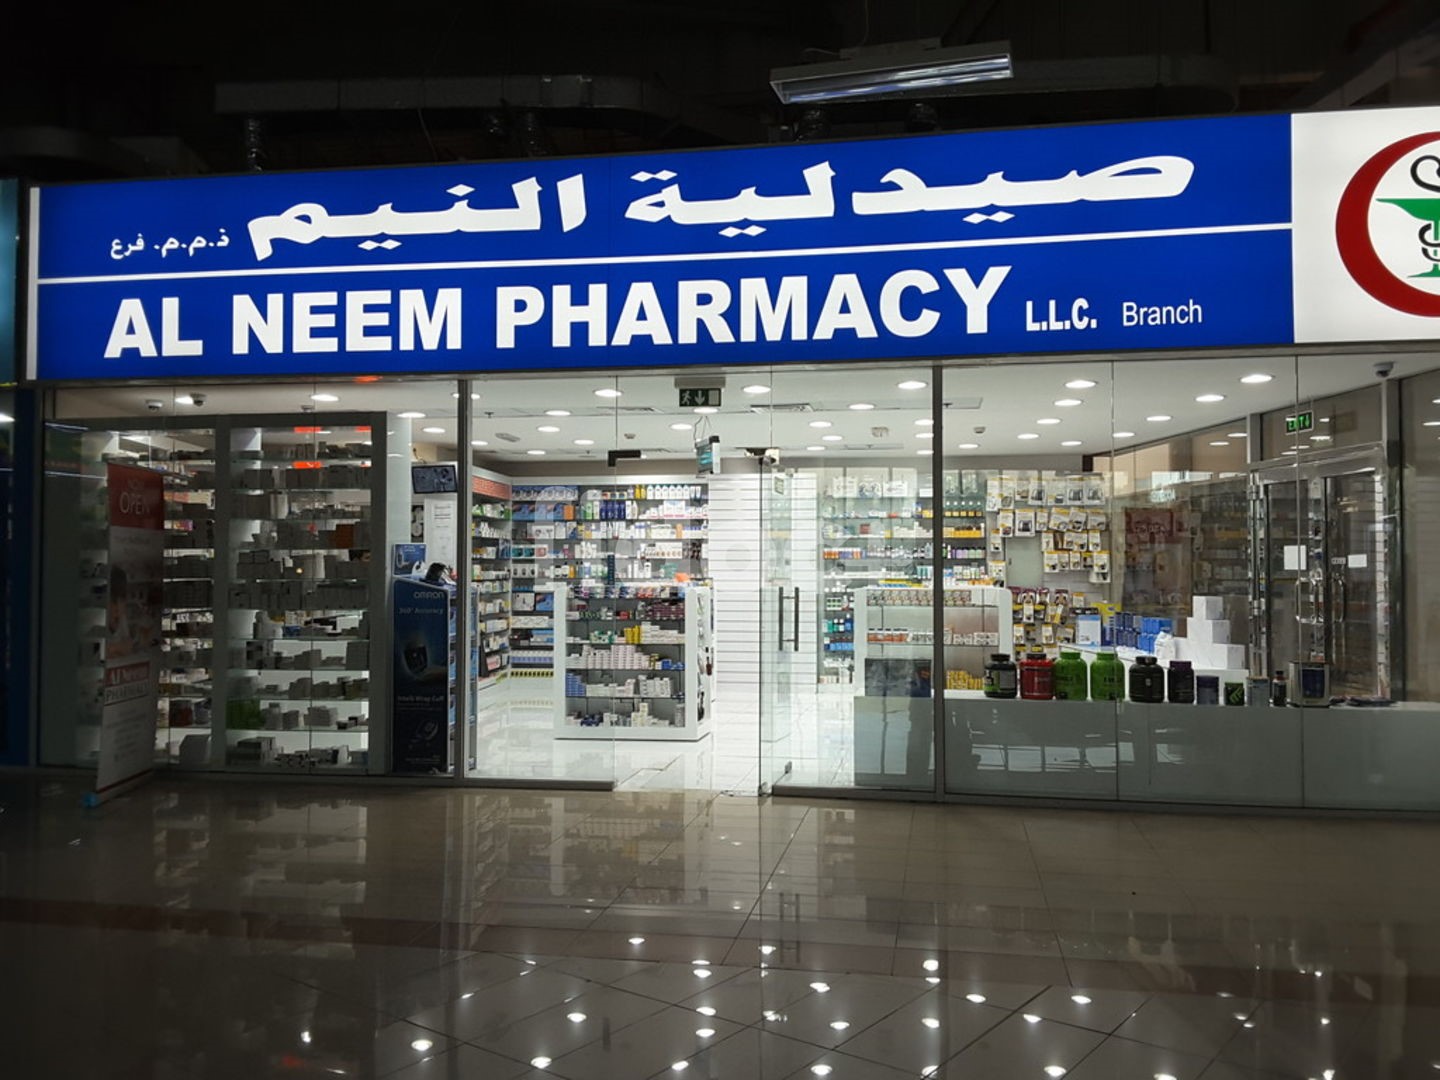 Al Neem Pharmacy (Jafza), Dubai